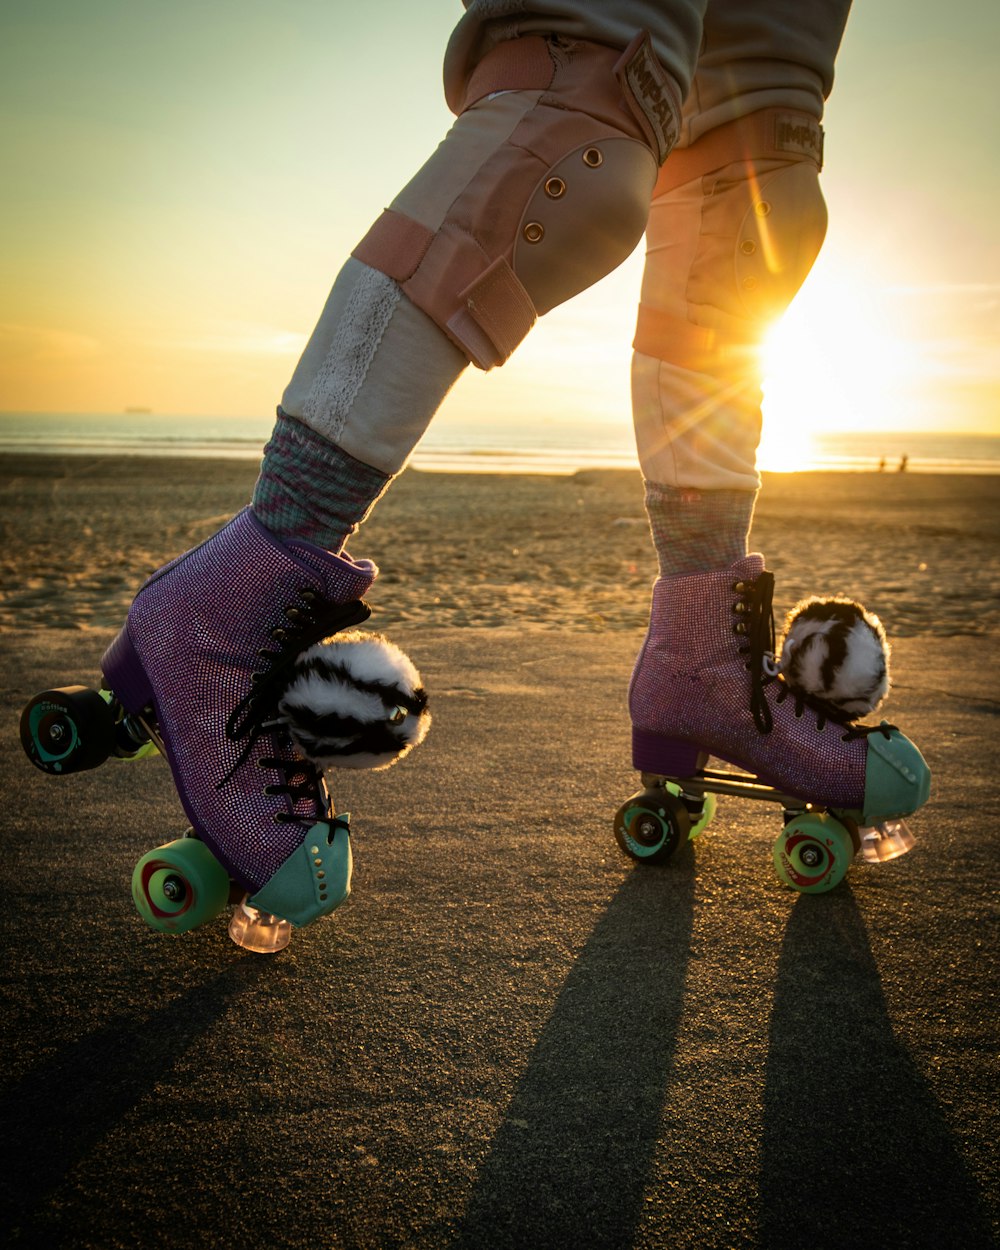 une personne faisant du skateboard sur une plage